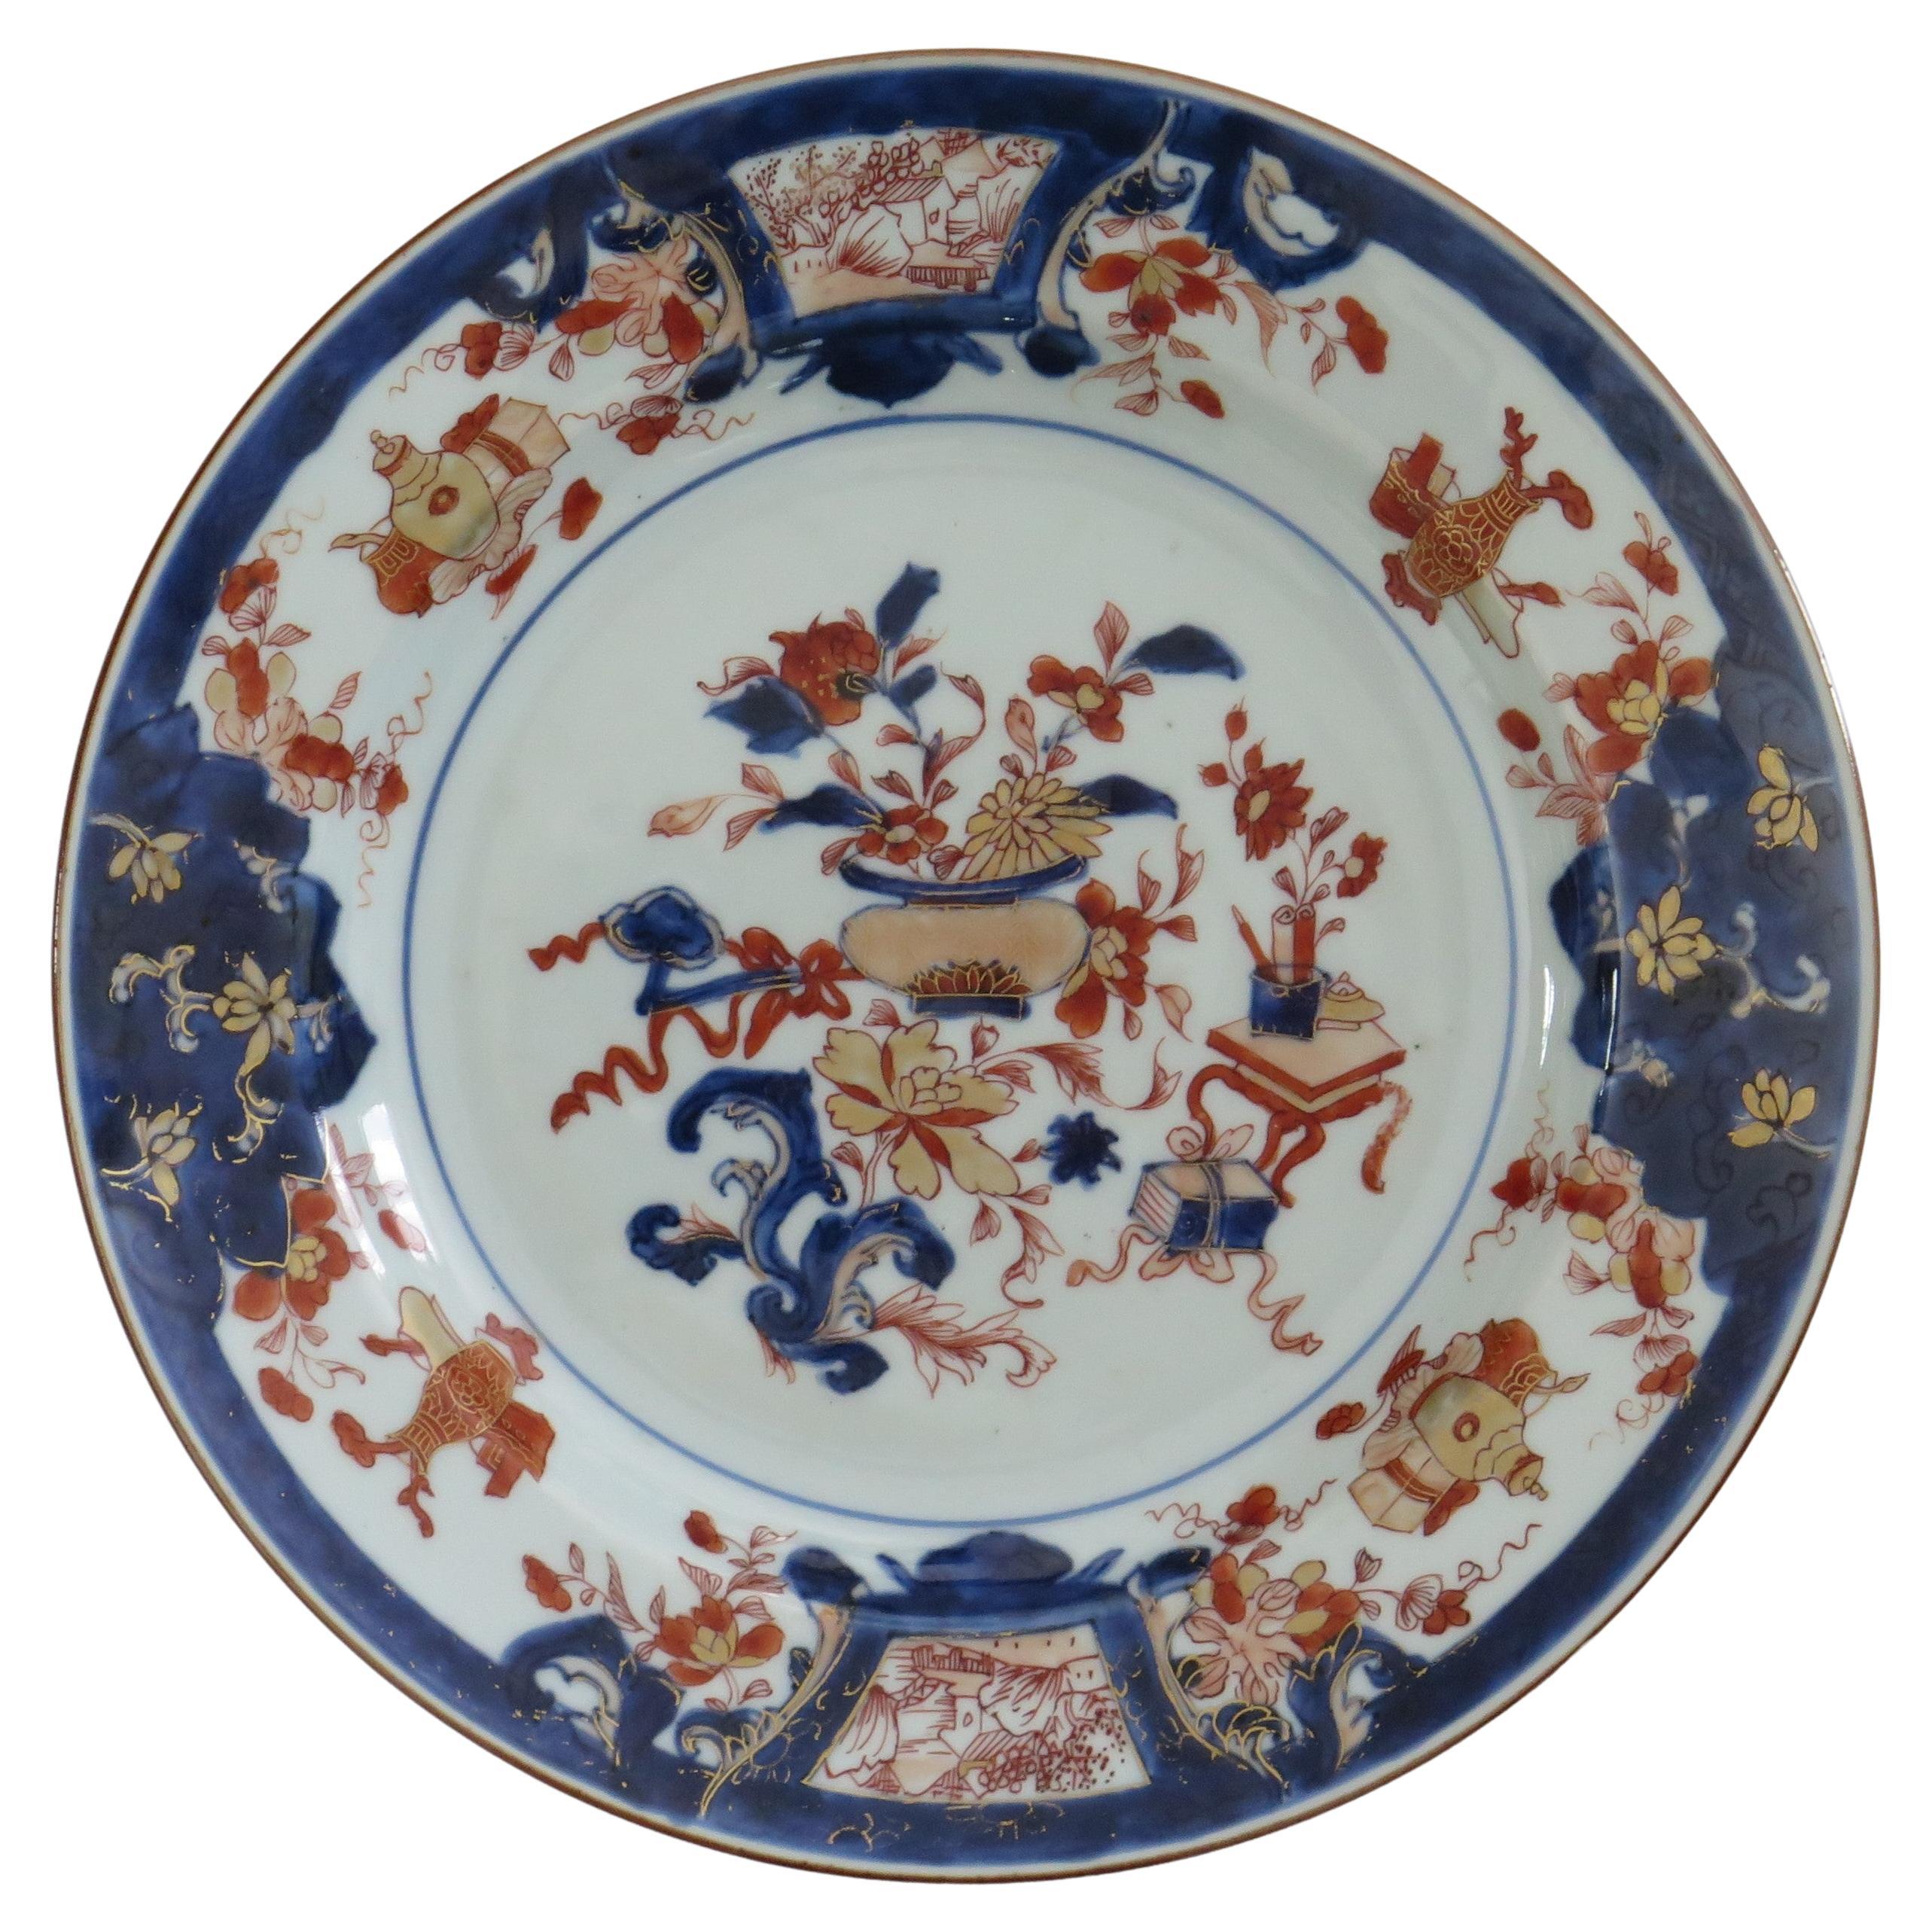 Assiette en porcelaine chinoise finement décorée à la main, Qing Kangxi circa 1700